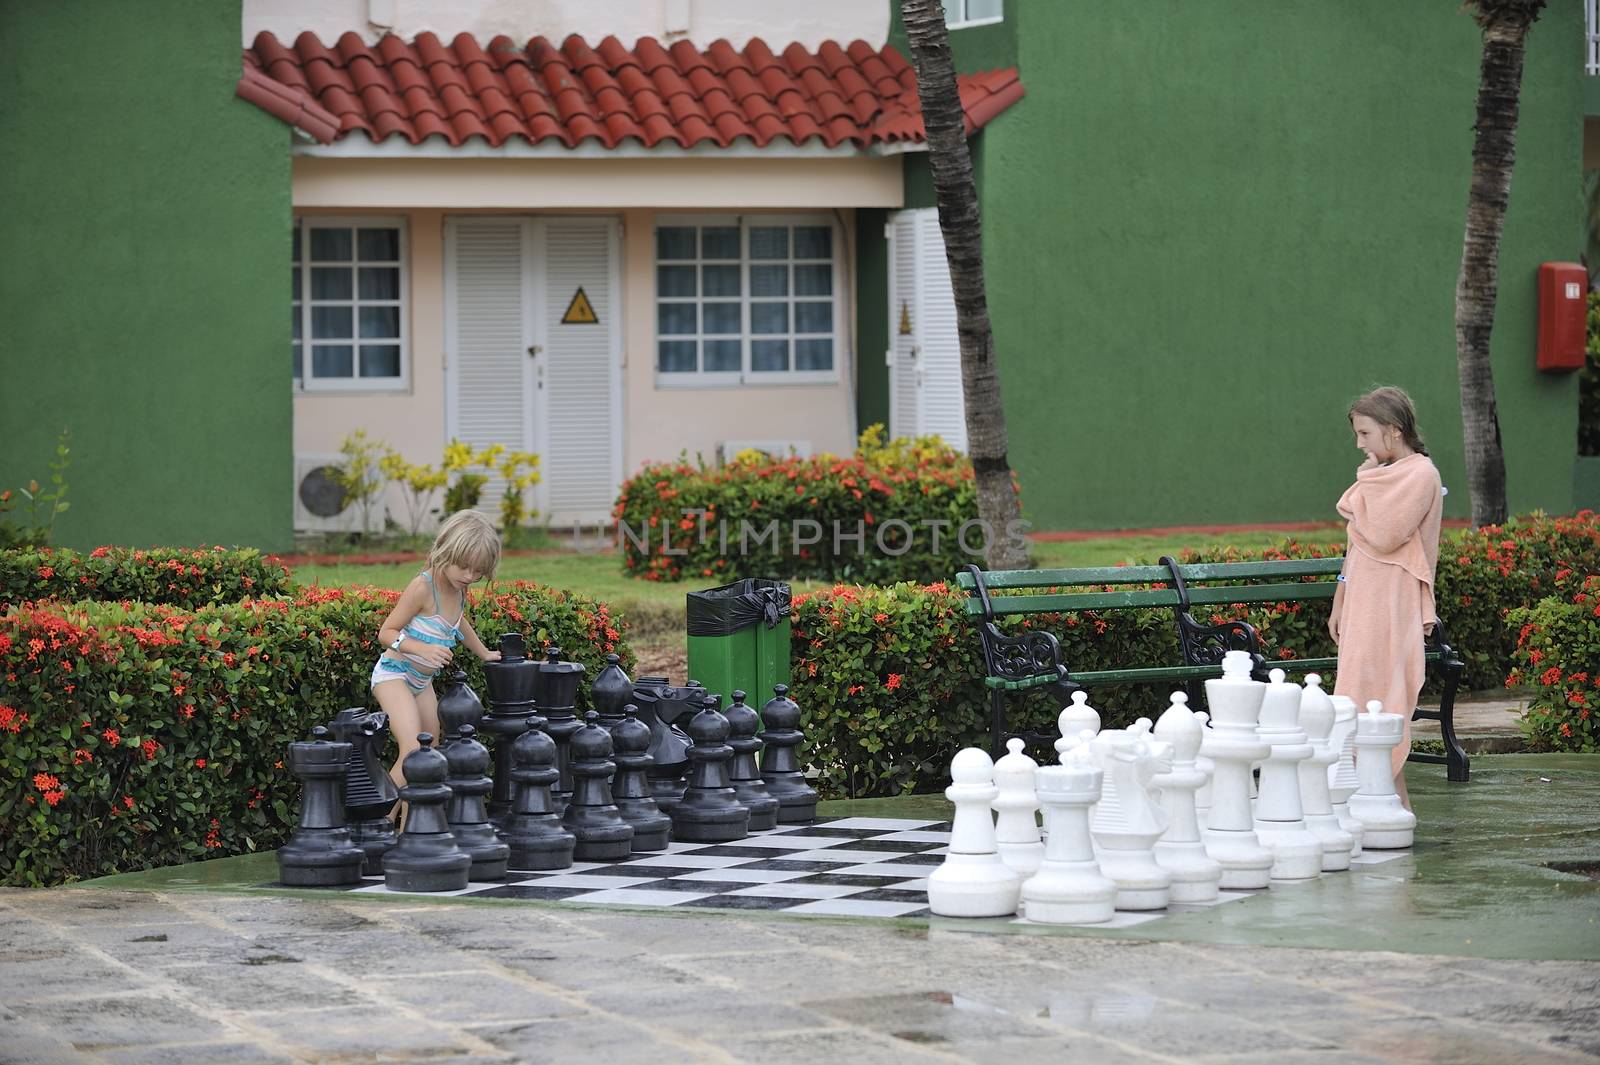 Girls playing big chess. by kertis